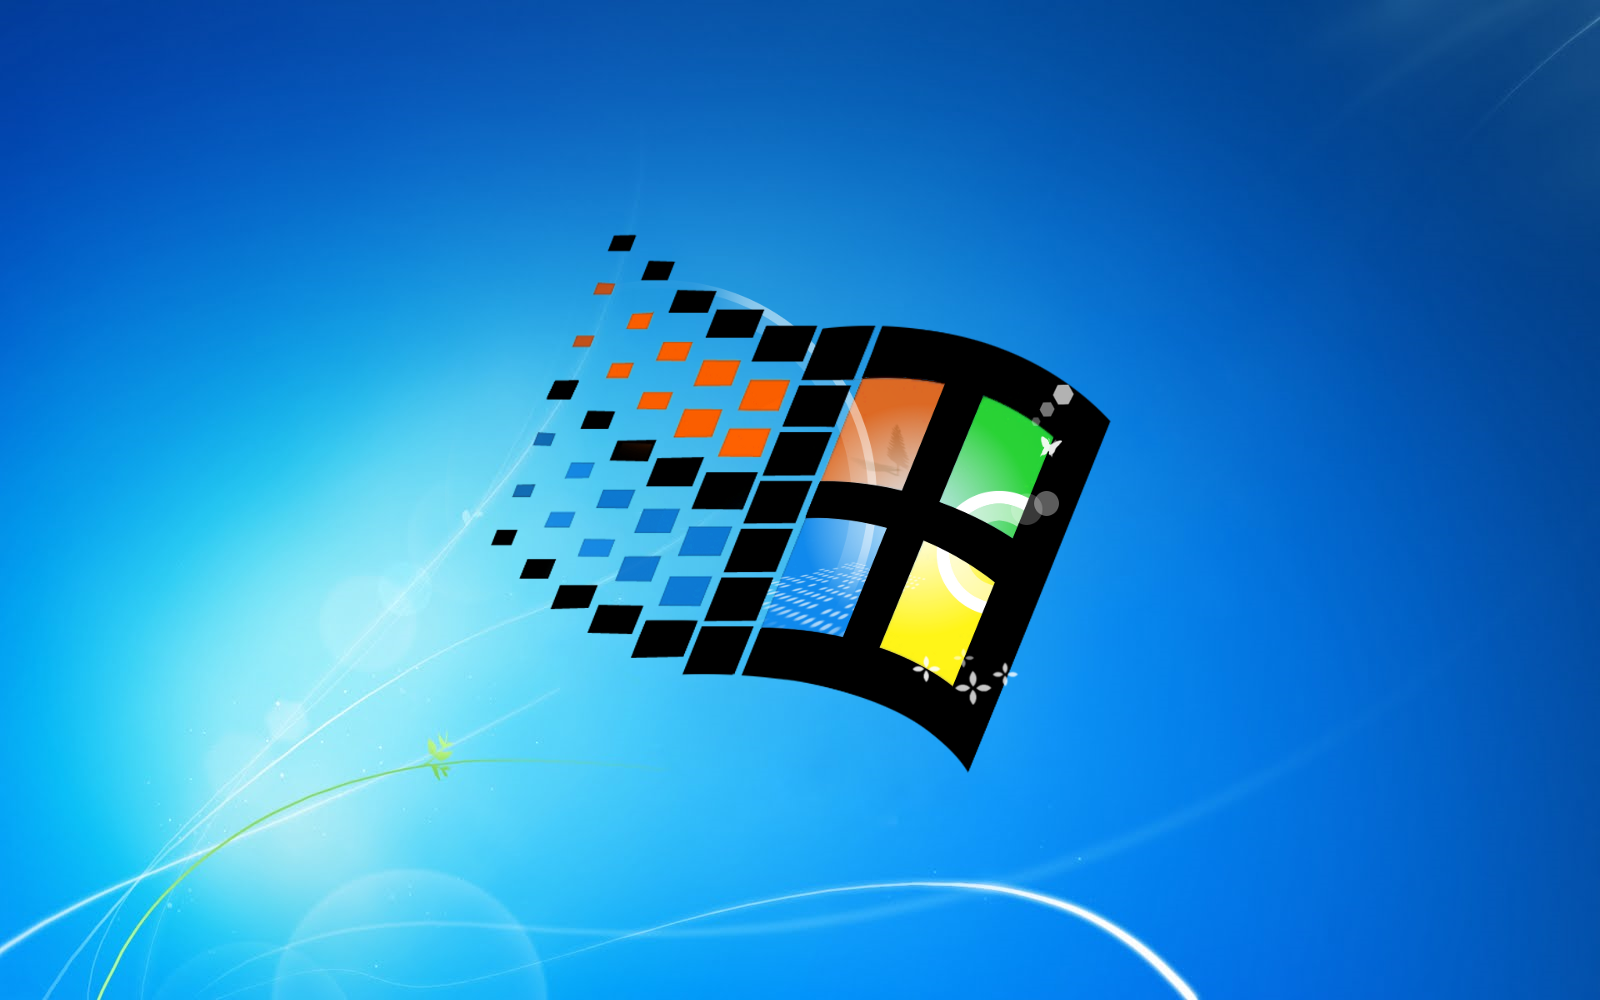 Windows 95 Wallpaper Broken Images Pictures   Becuo